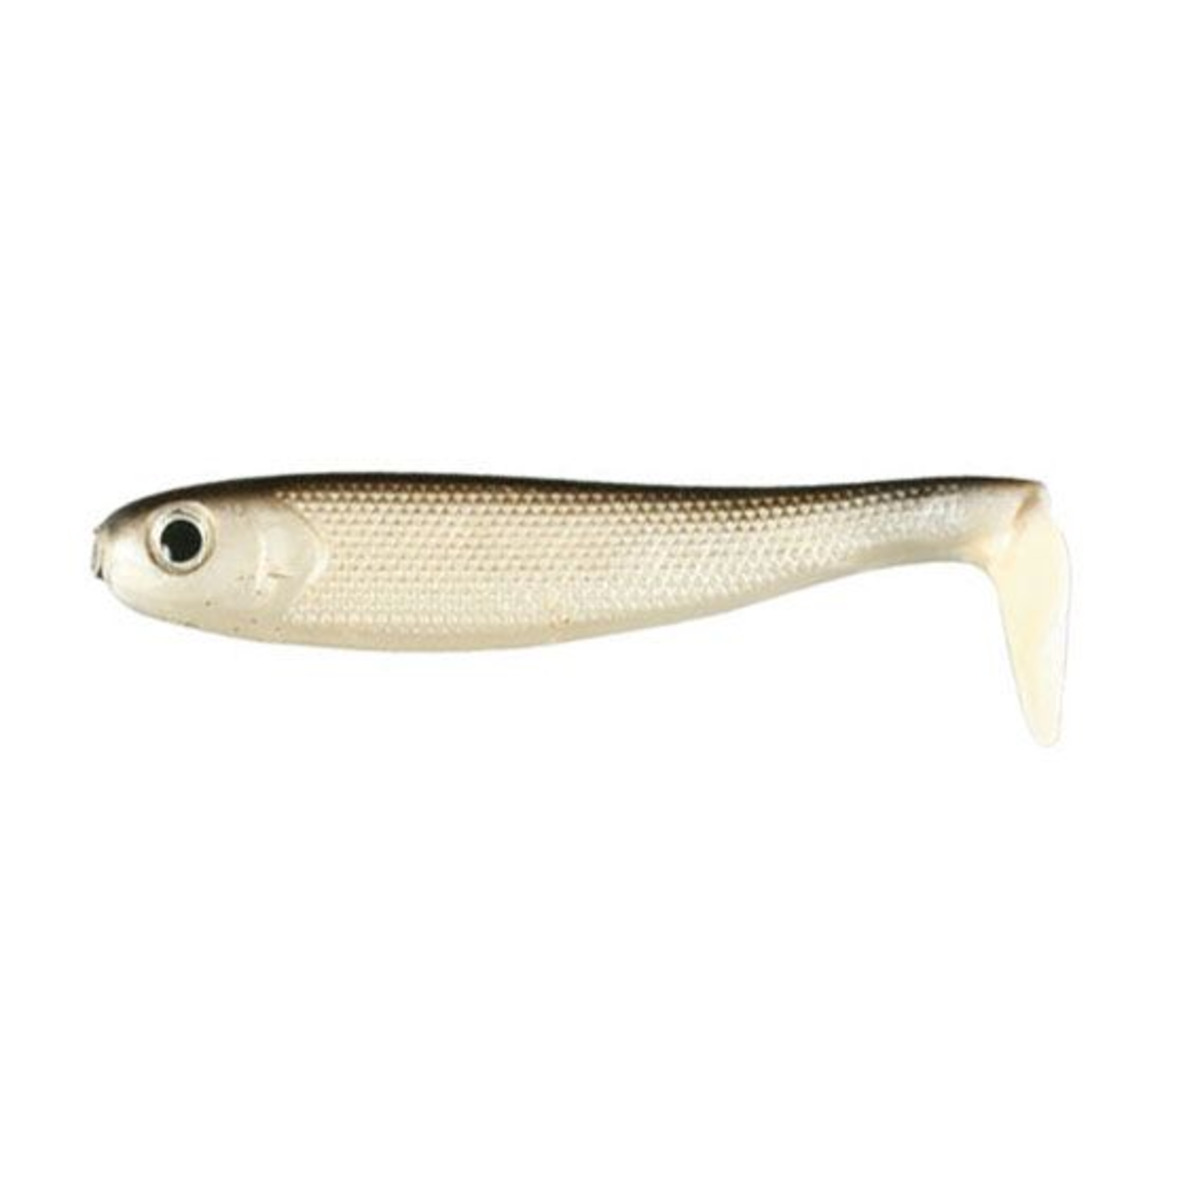 Nomura Live Fish - 10 cm - 14 g - Multicolor Fish